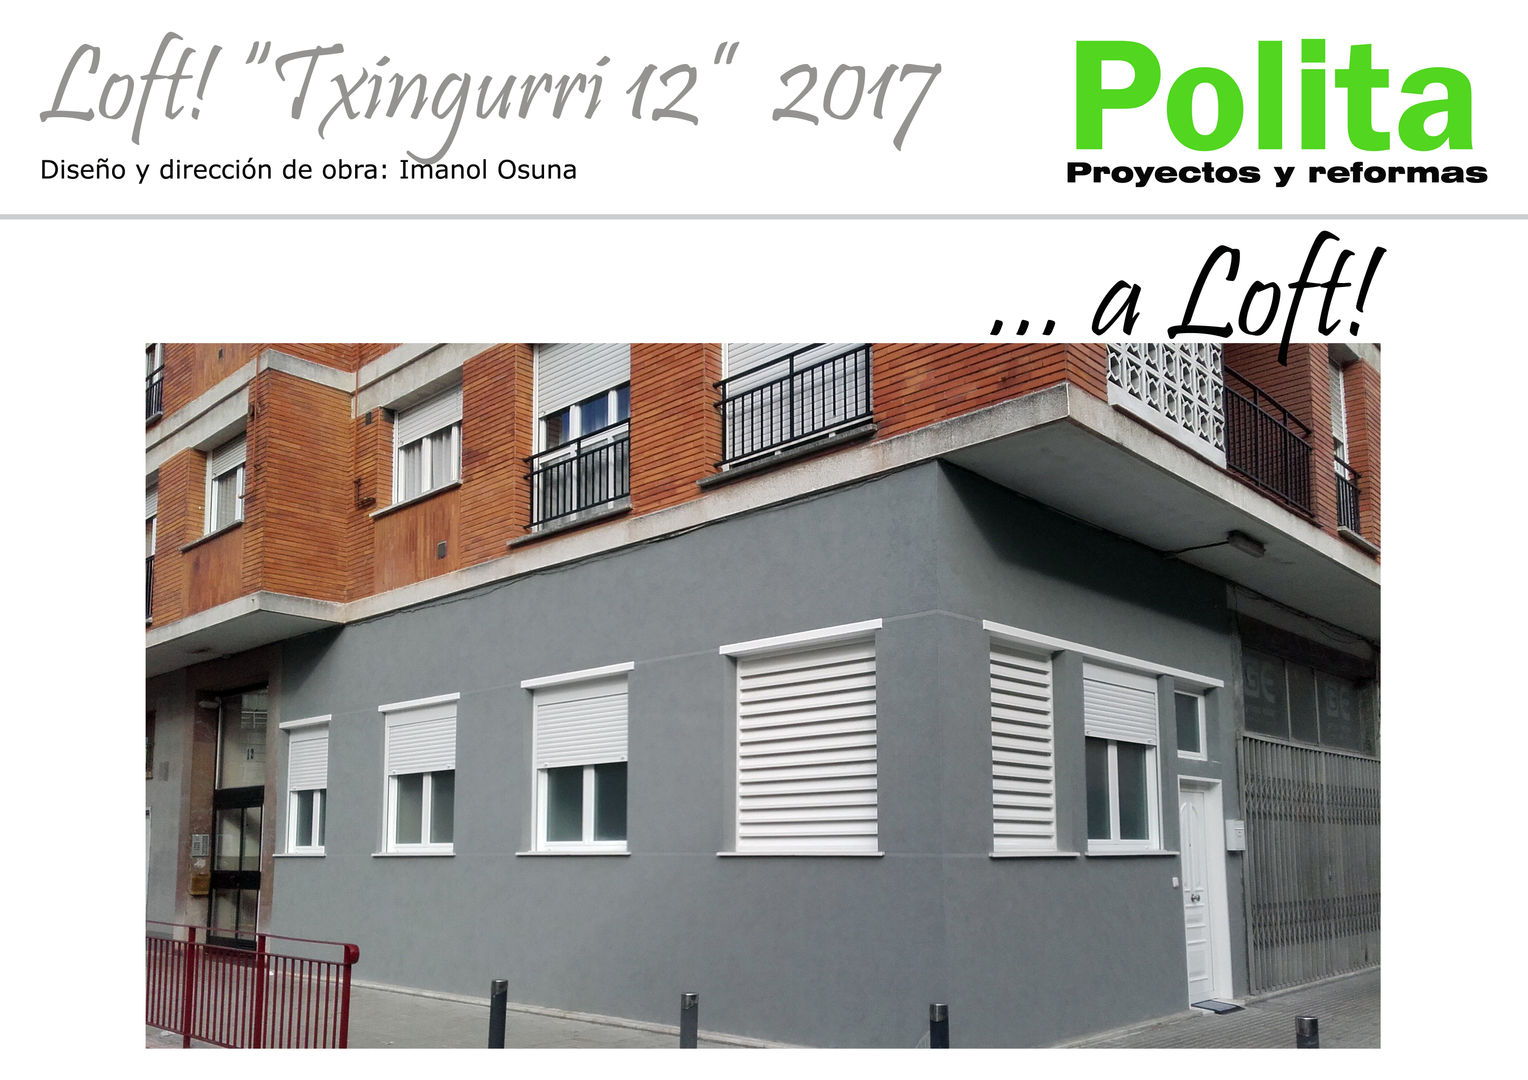 LOFT "txingurri 12" _ 2016, POLITA proyectos y reformas POLITA proyectos y reformas Minimalist house